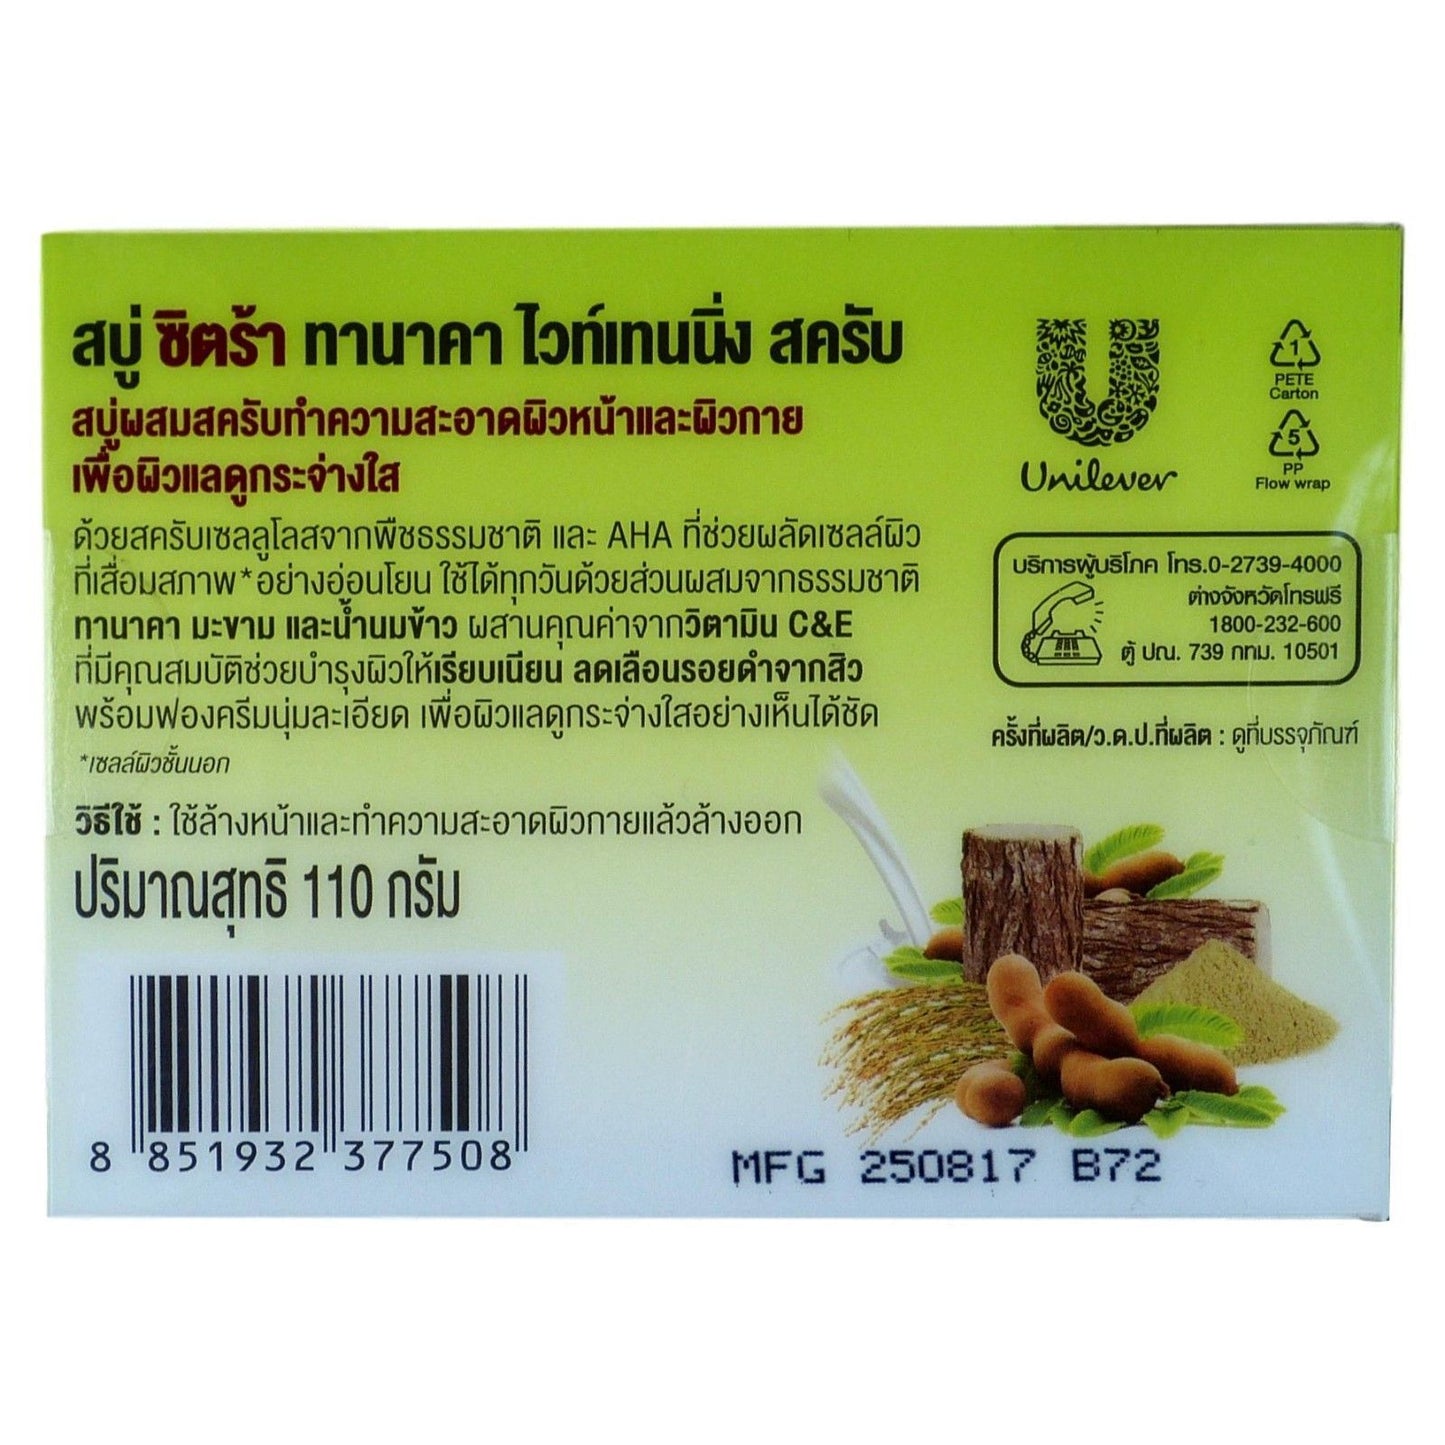 Citra Thanaka Whitening Exfoliating Scrub Natural Herbal Soap Bar 110 grams - Asian Beauty Supply